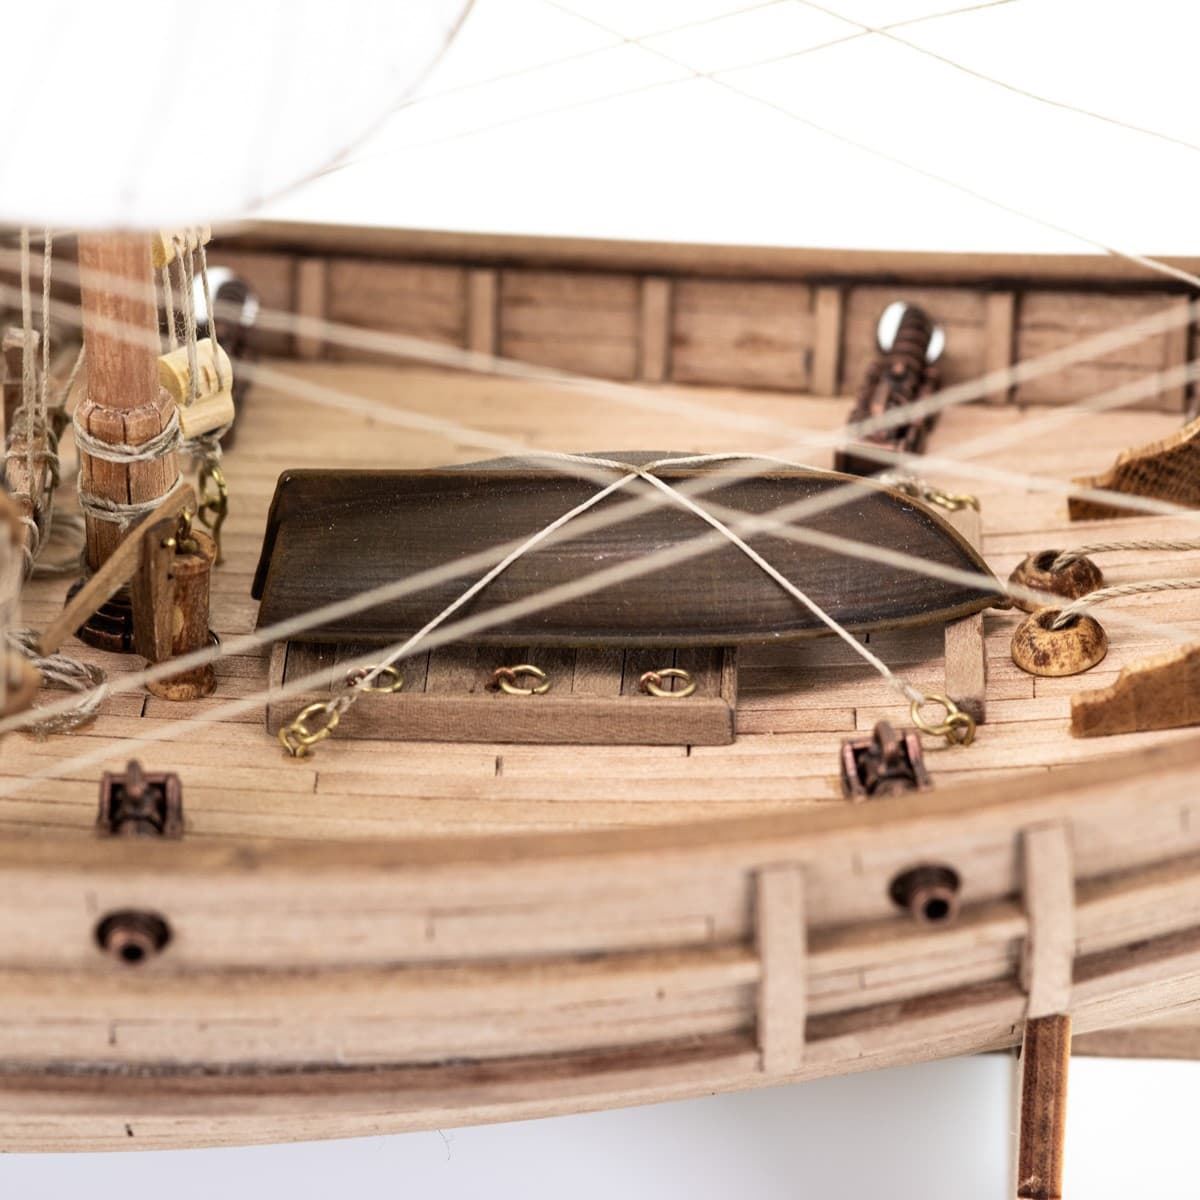 Maqueta barco de madera: Carabela Pinta - Imagen 8